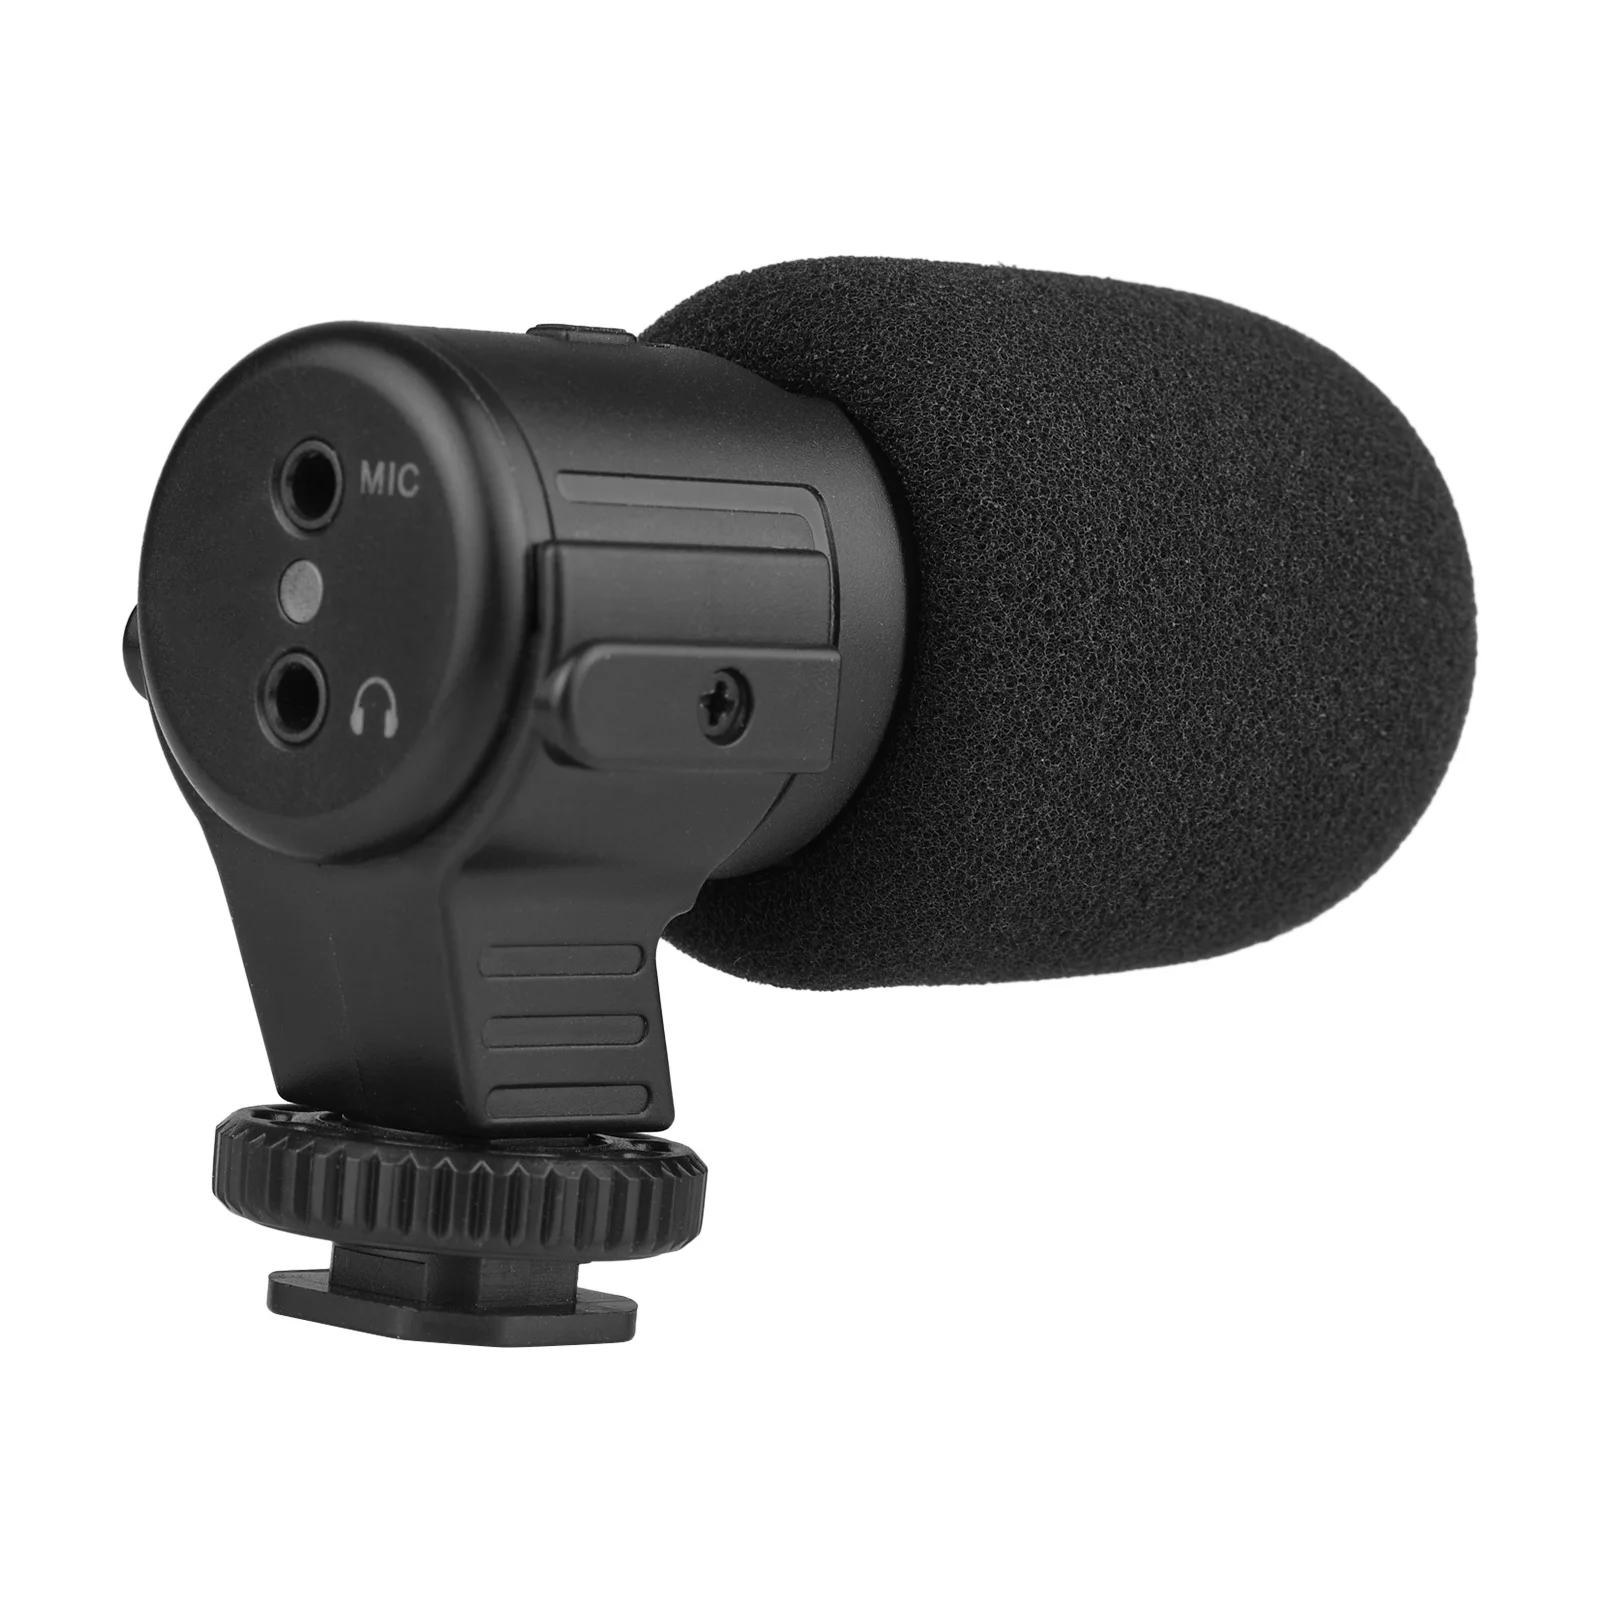 

Кардиоидная видеокамера, мини-микрофон со встроенным аккумулятором 3,5 мА · ч, гнездо 110 мм для контроля громкости